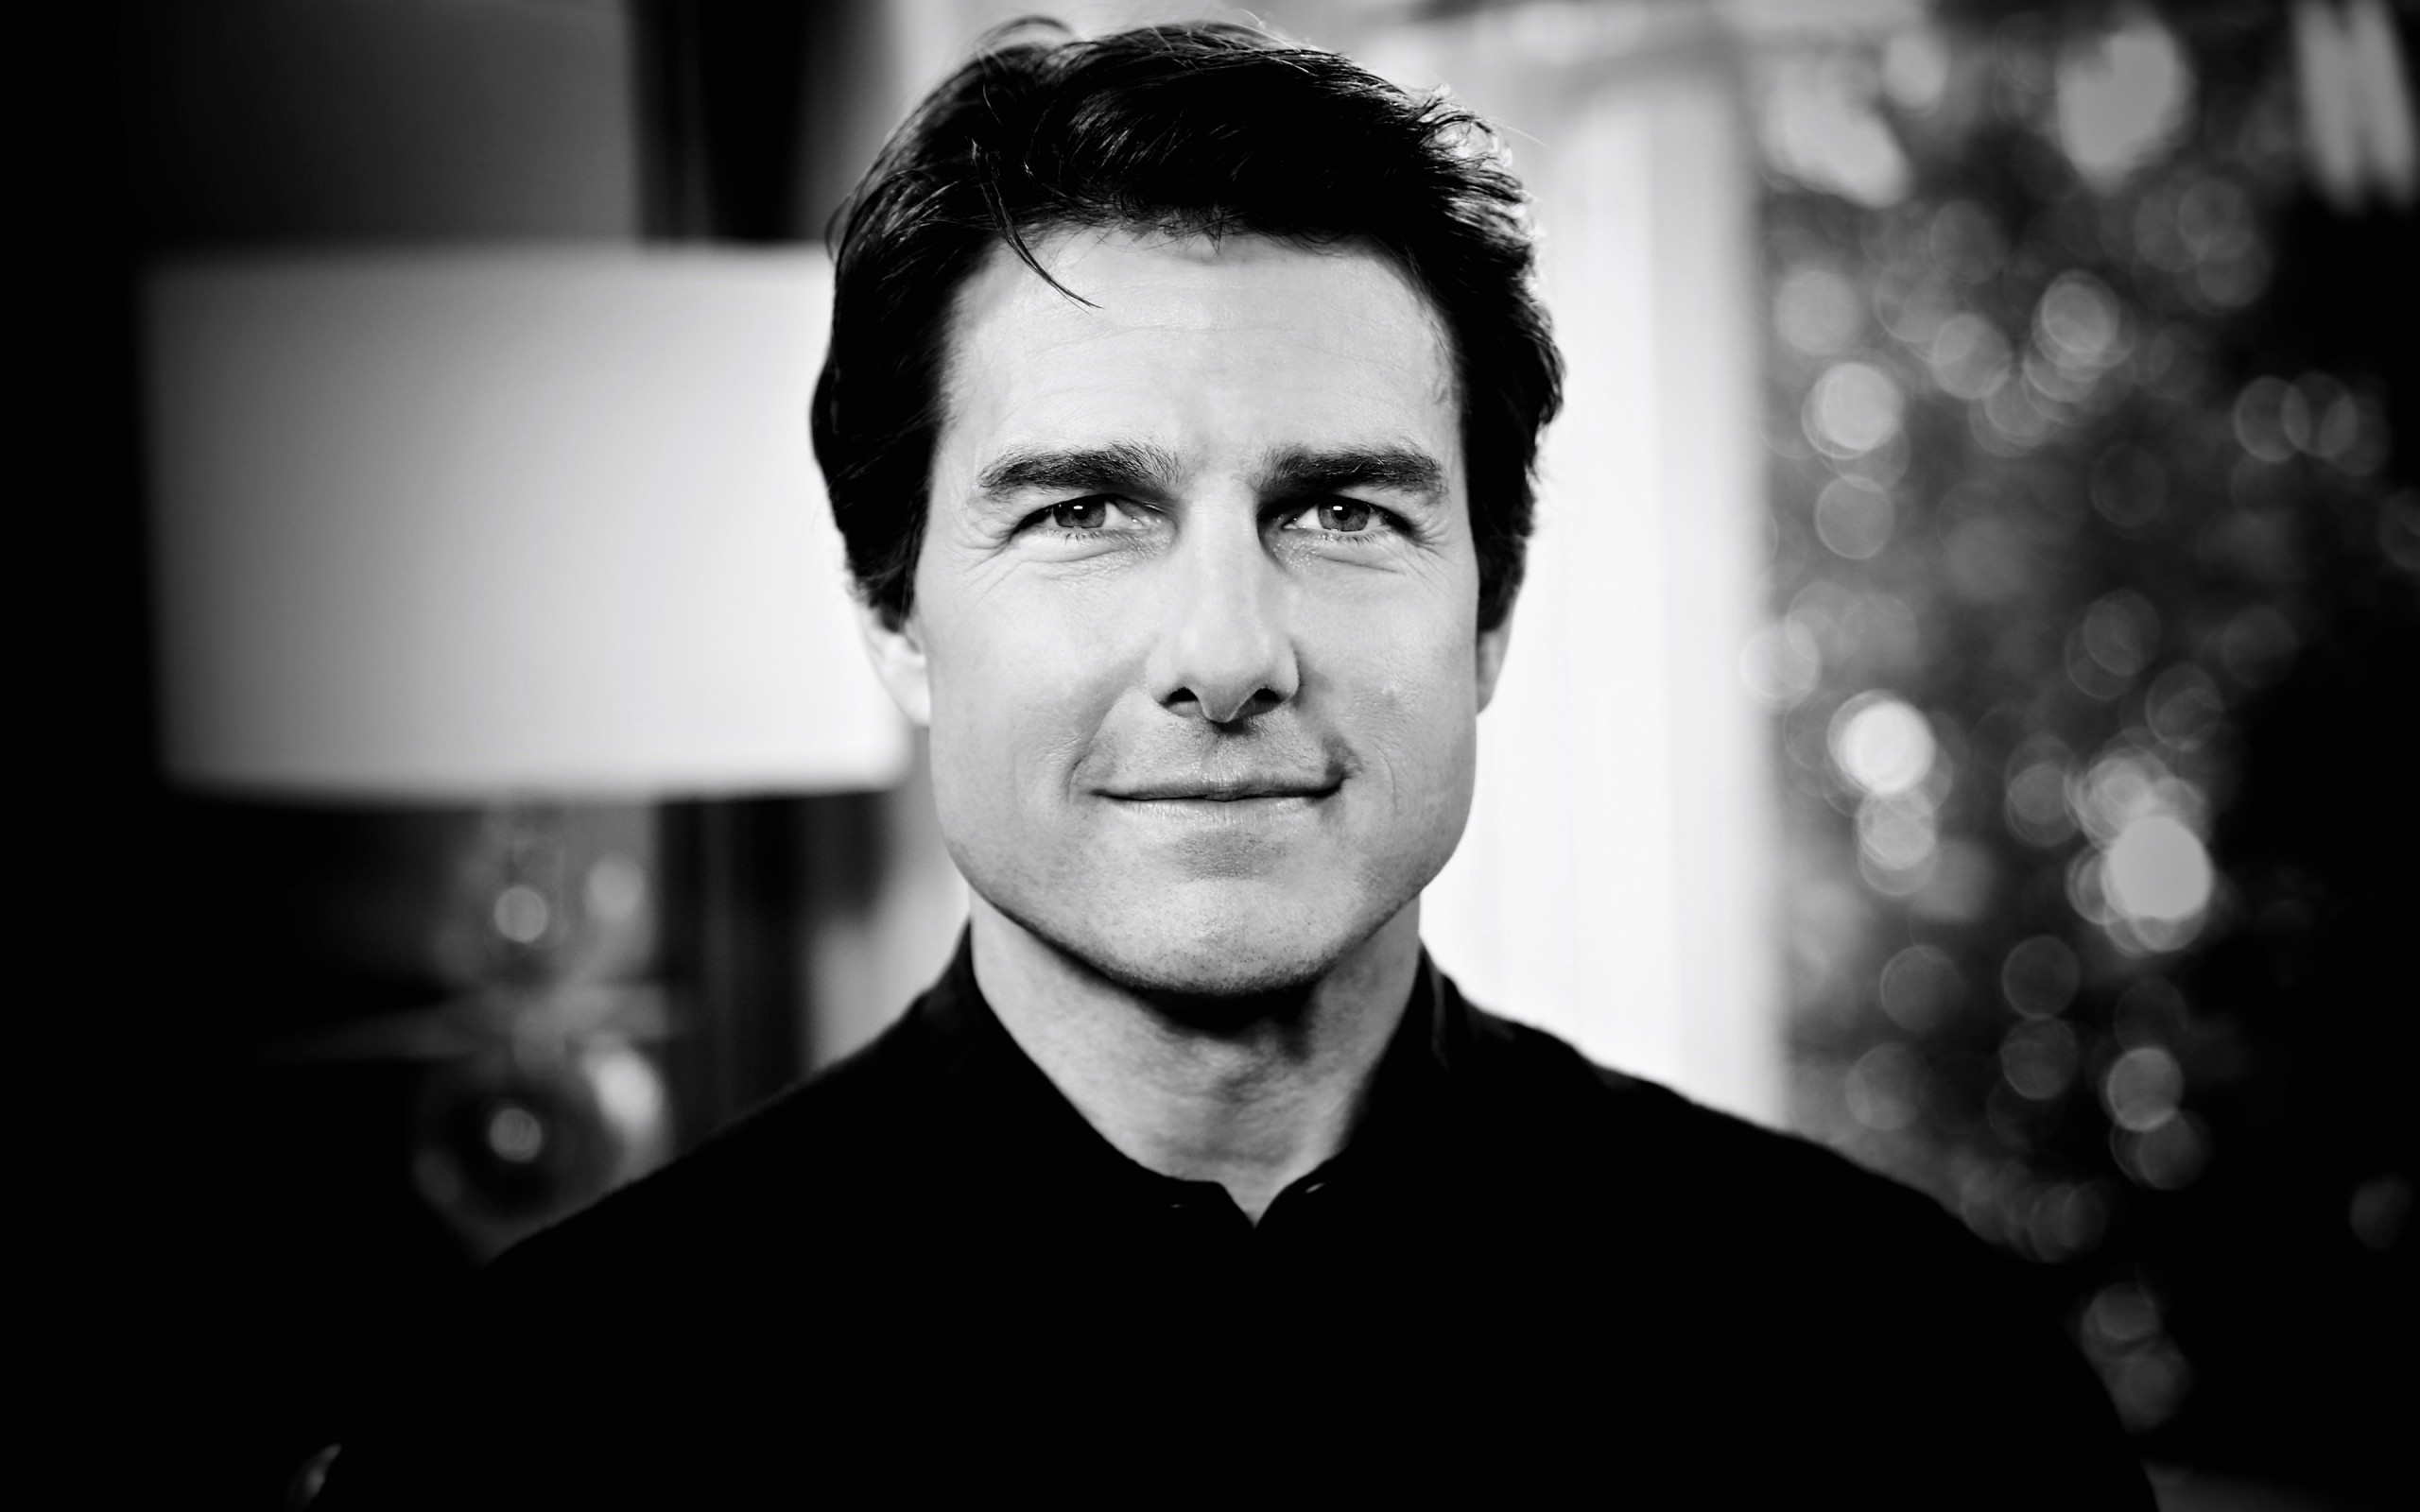 Tom Cruise Black & White Portrait Wallpaper for Desktop 2560x1600